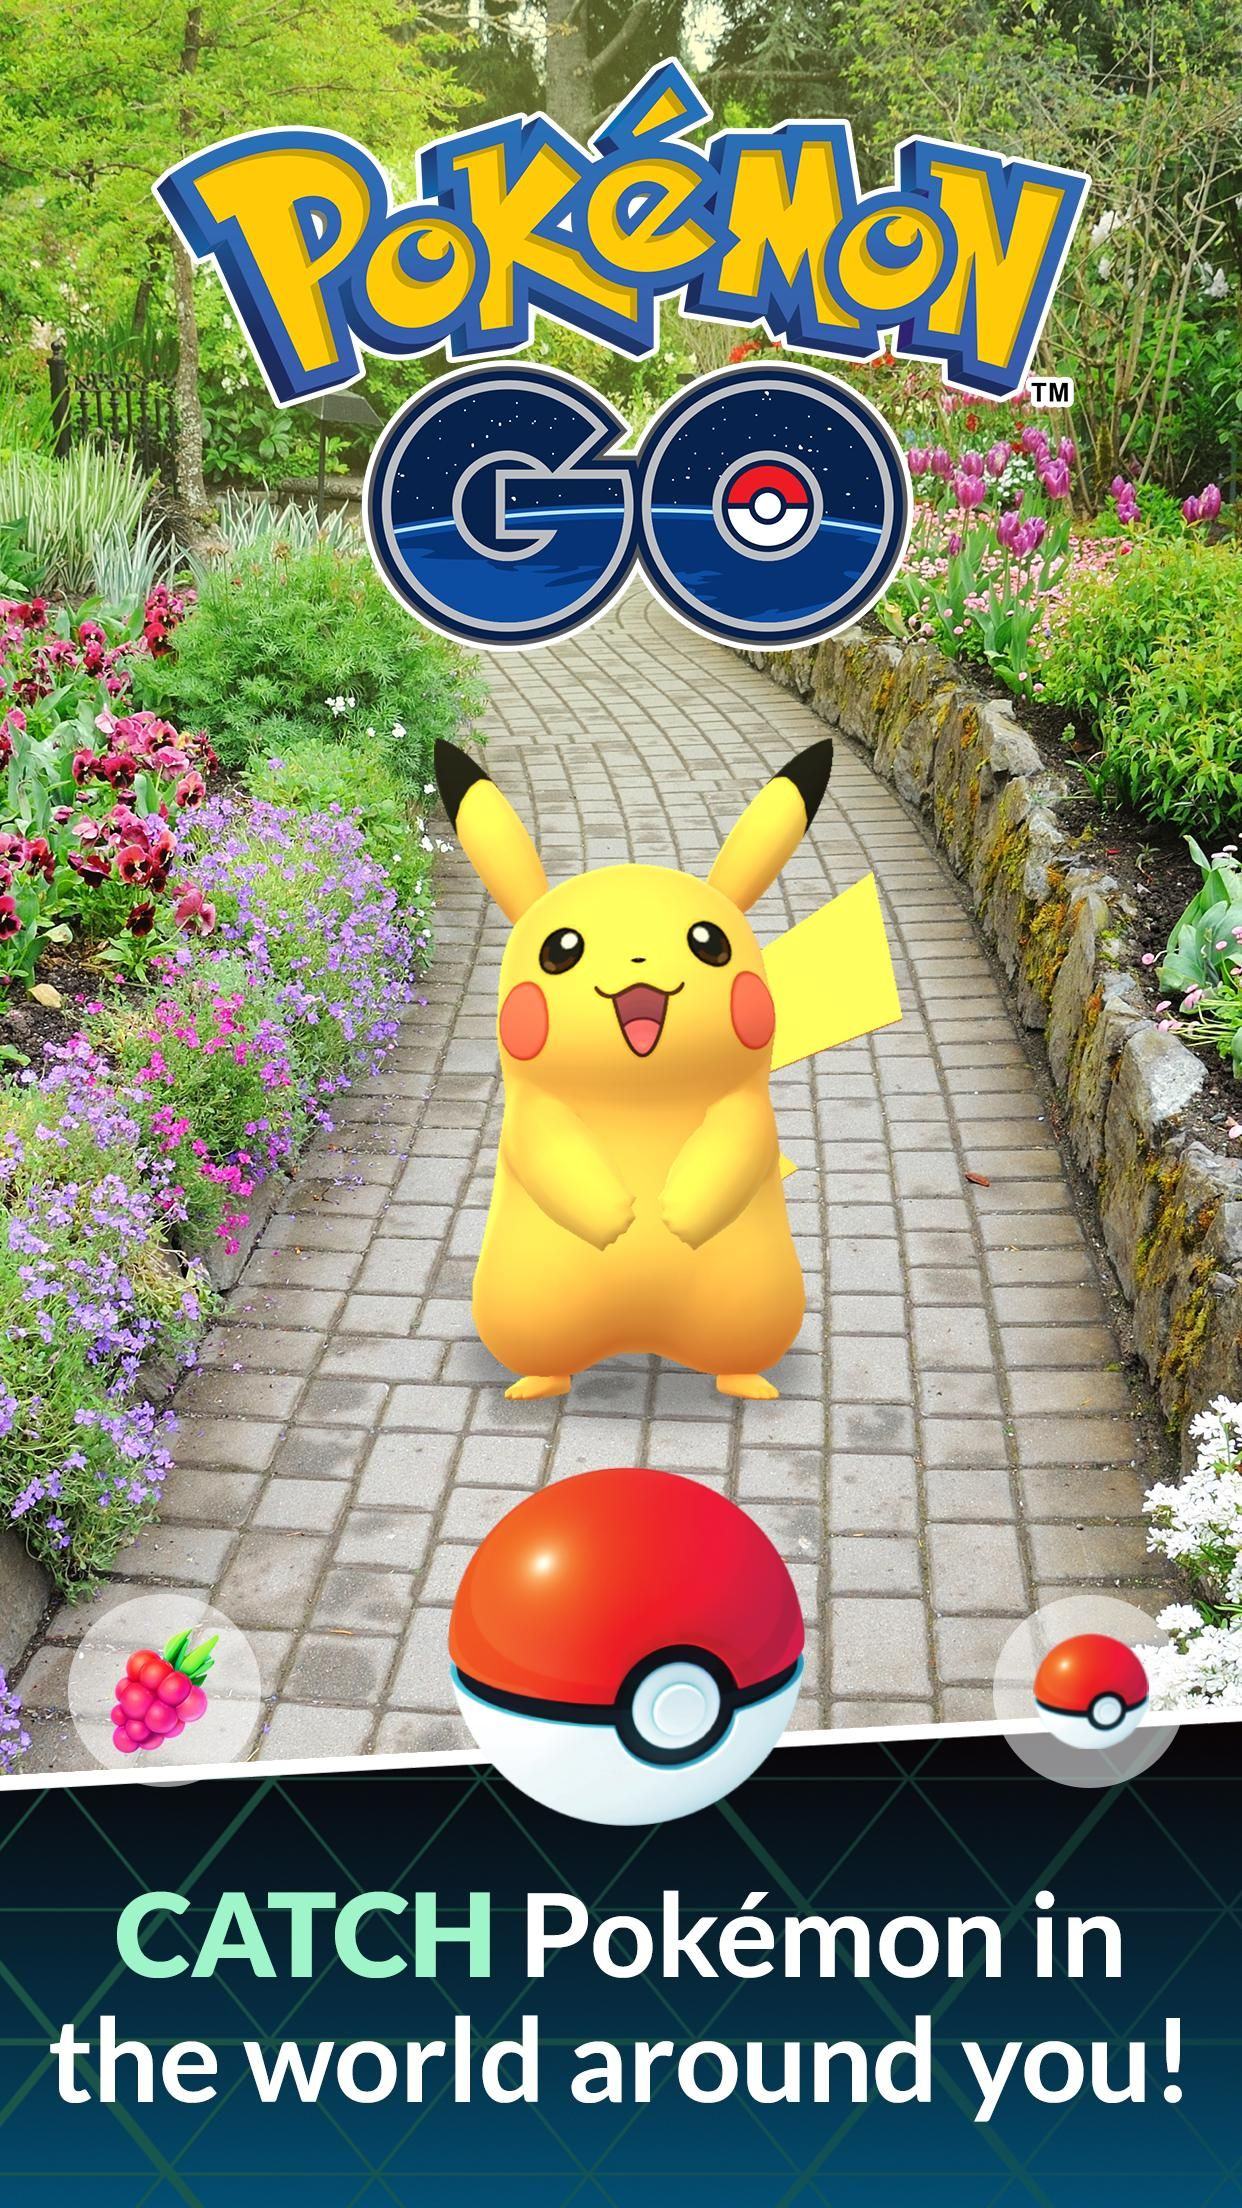 Pokémon Go game poster